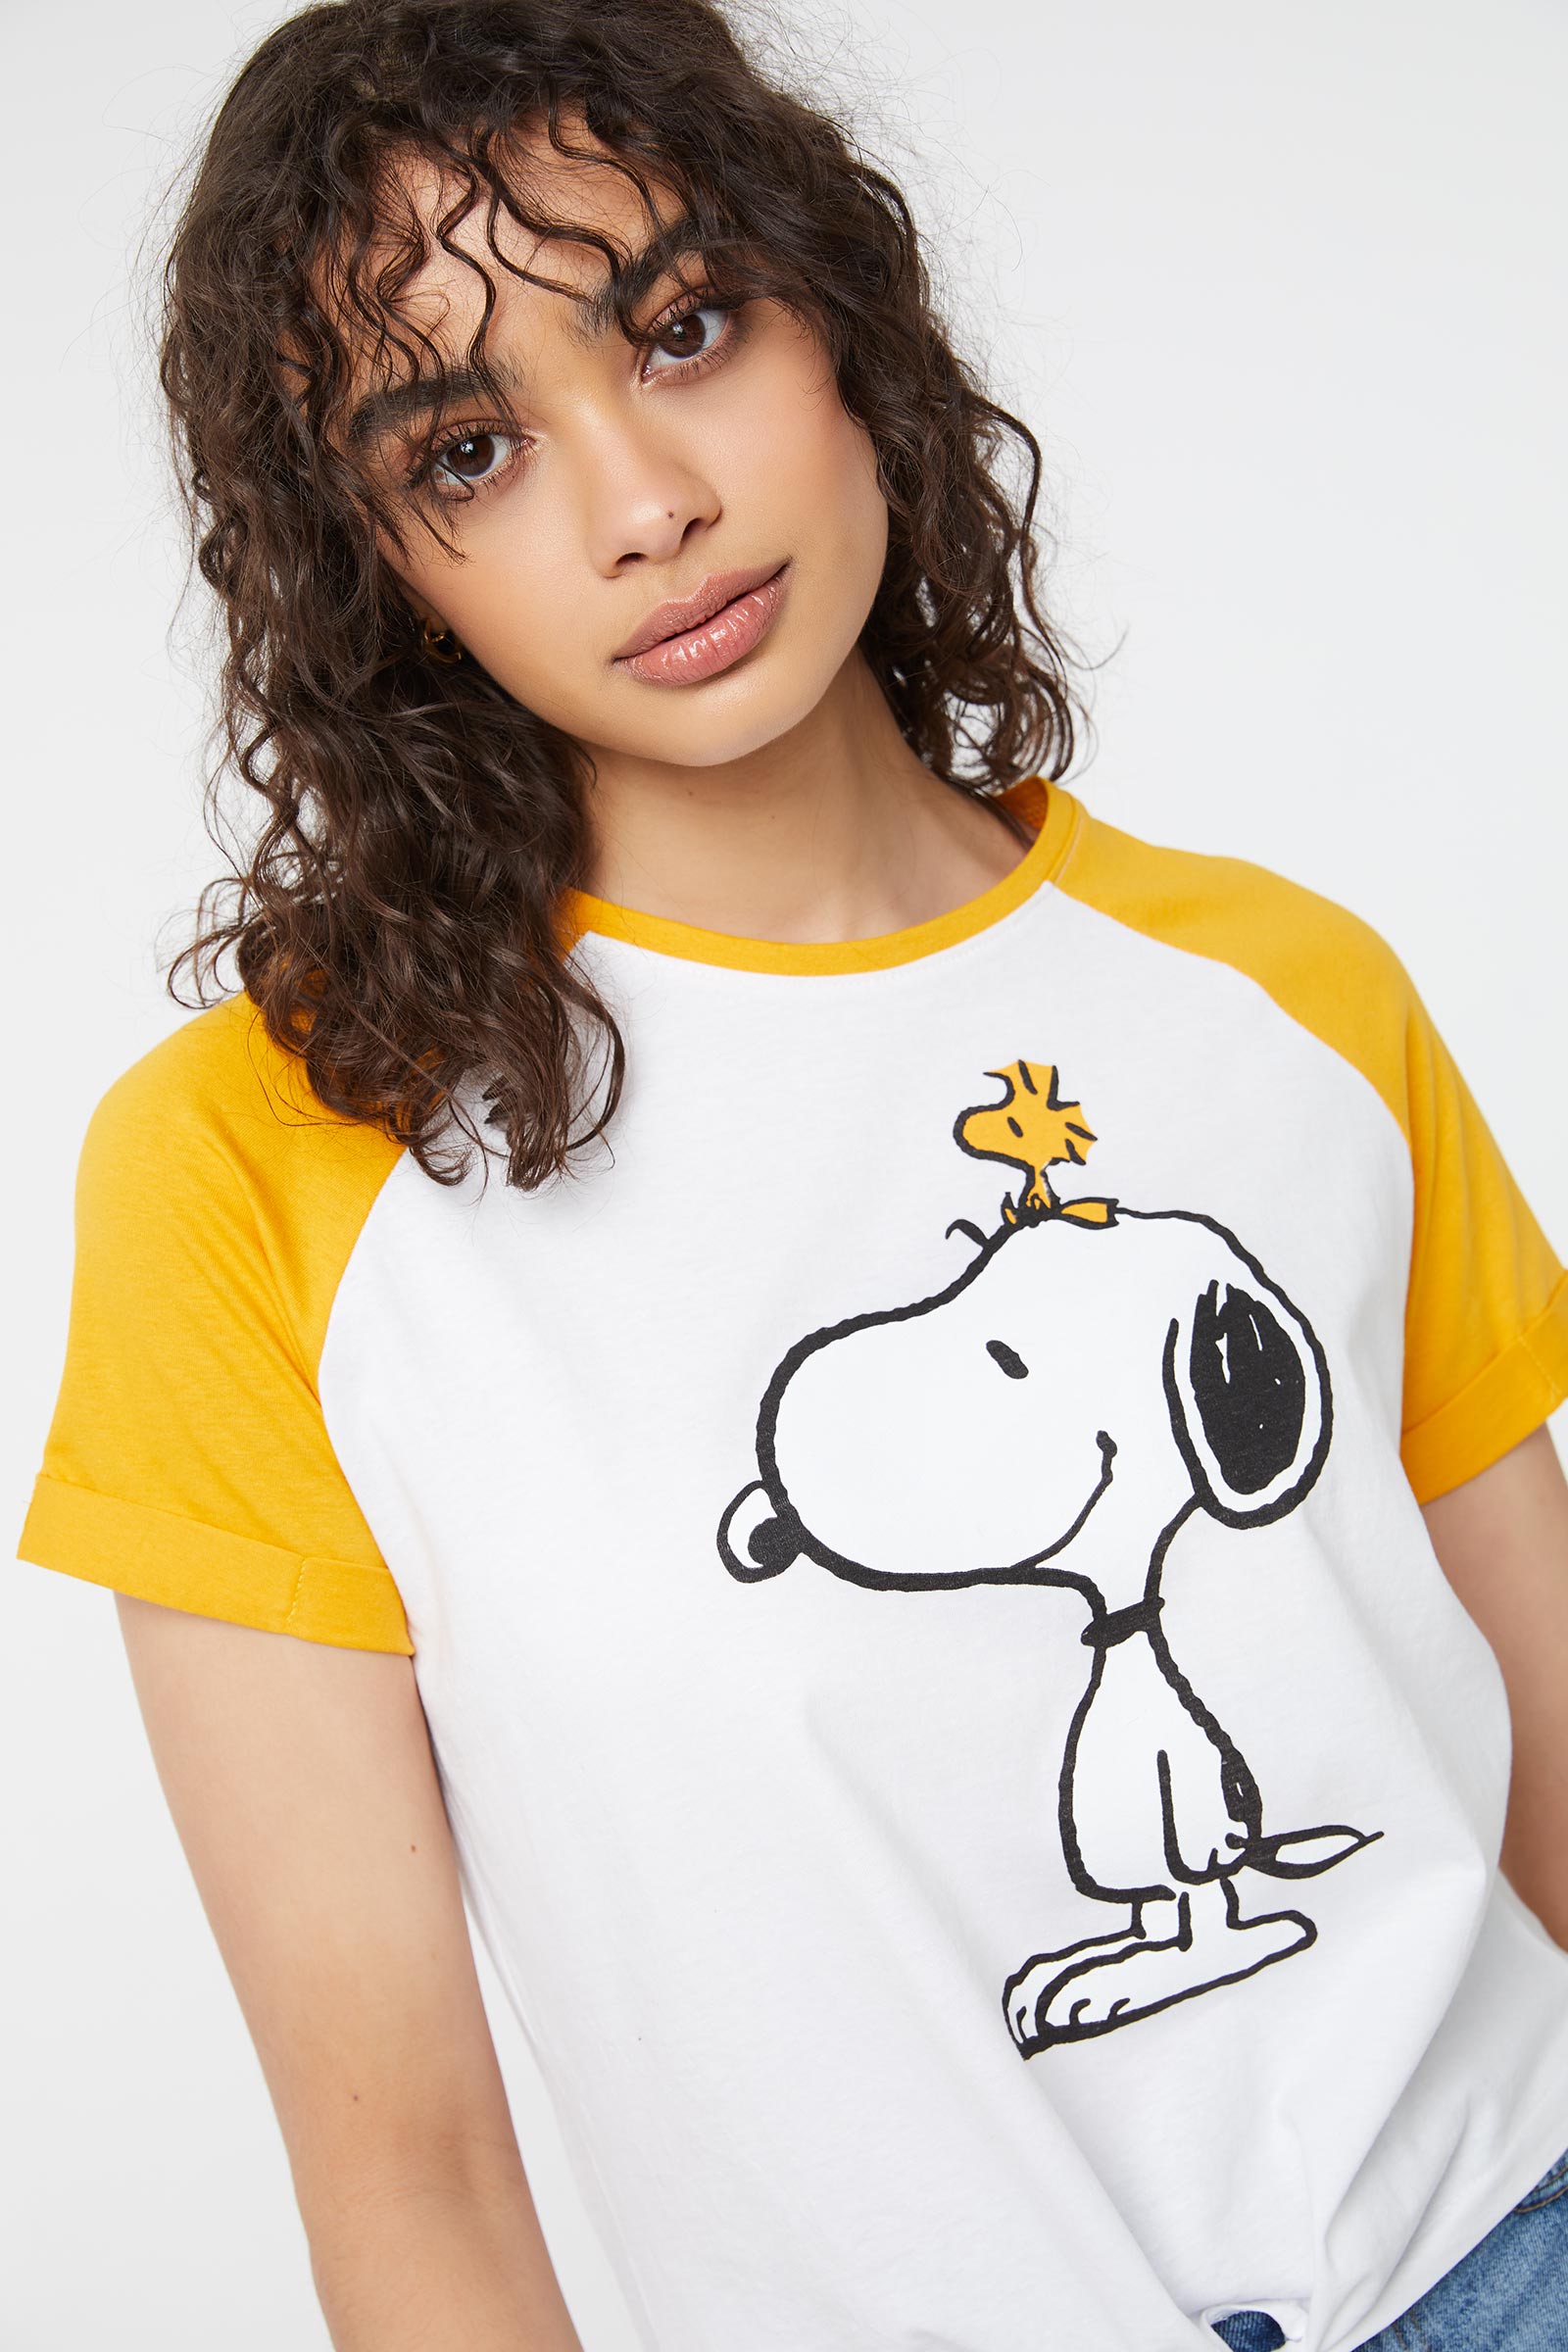 Snoopy & Woodstock Knotted Raglan Tee